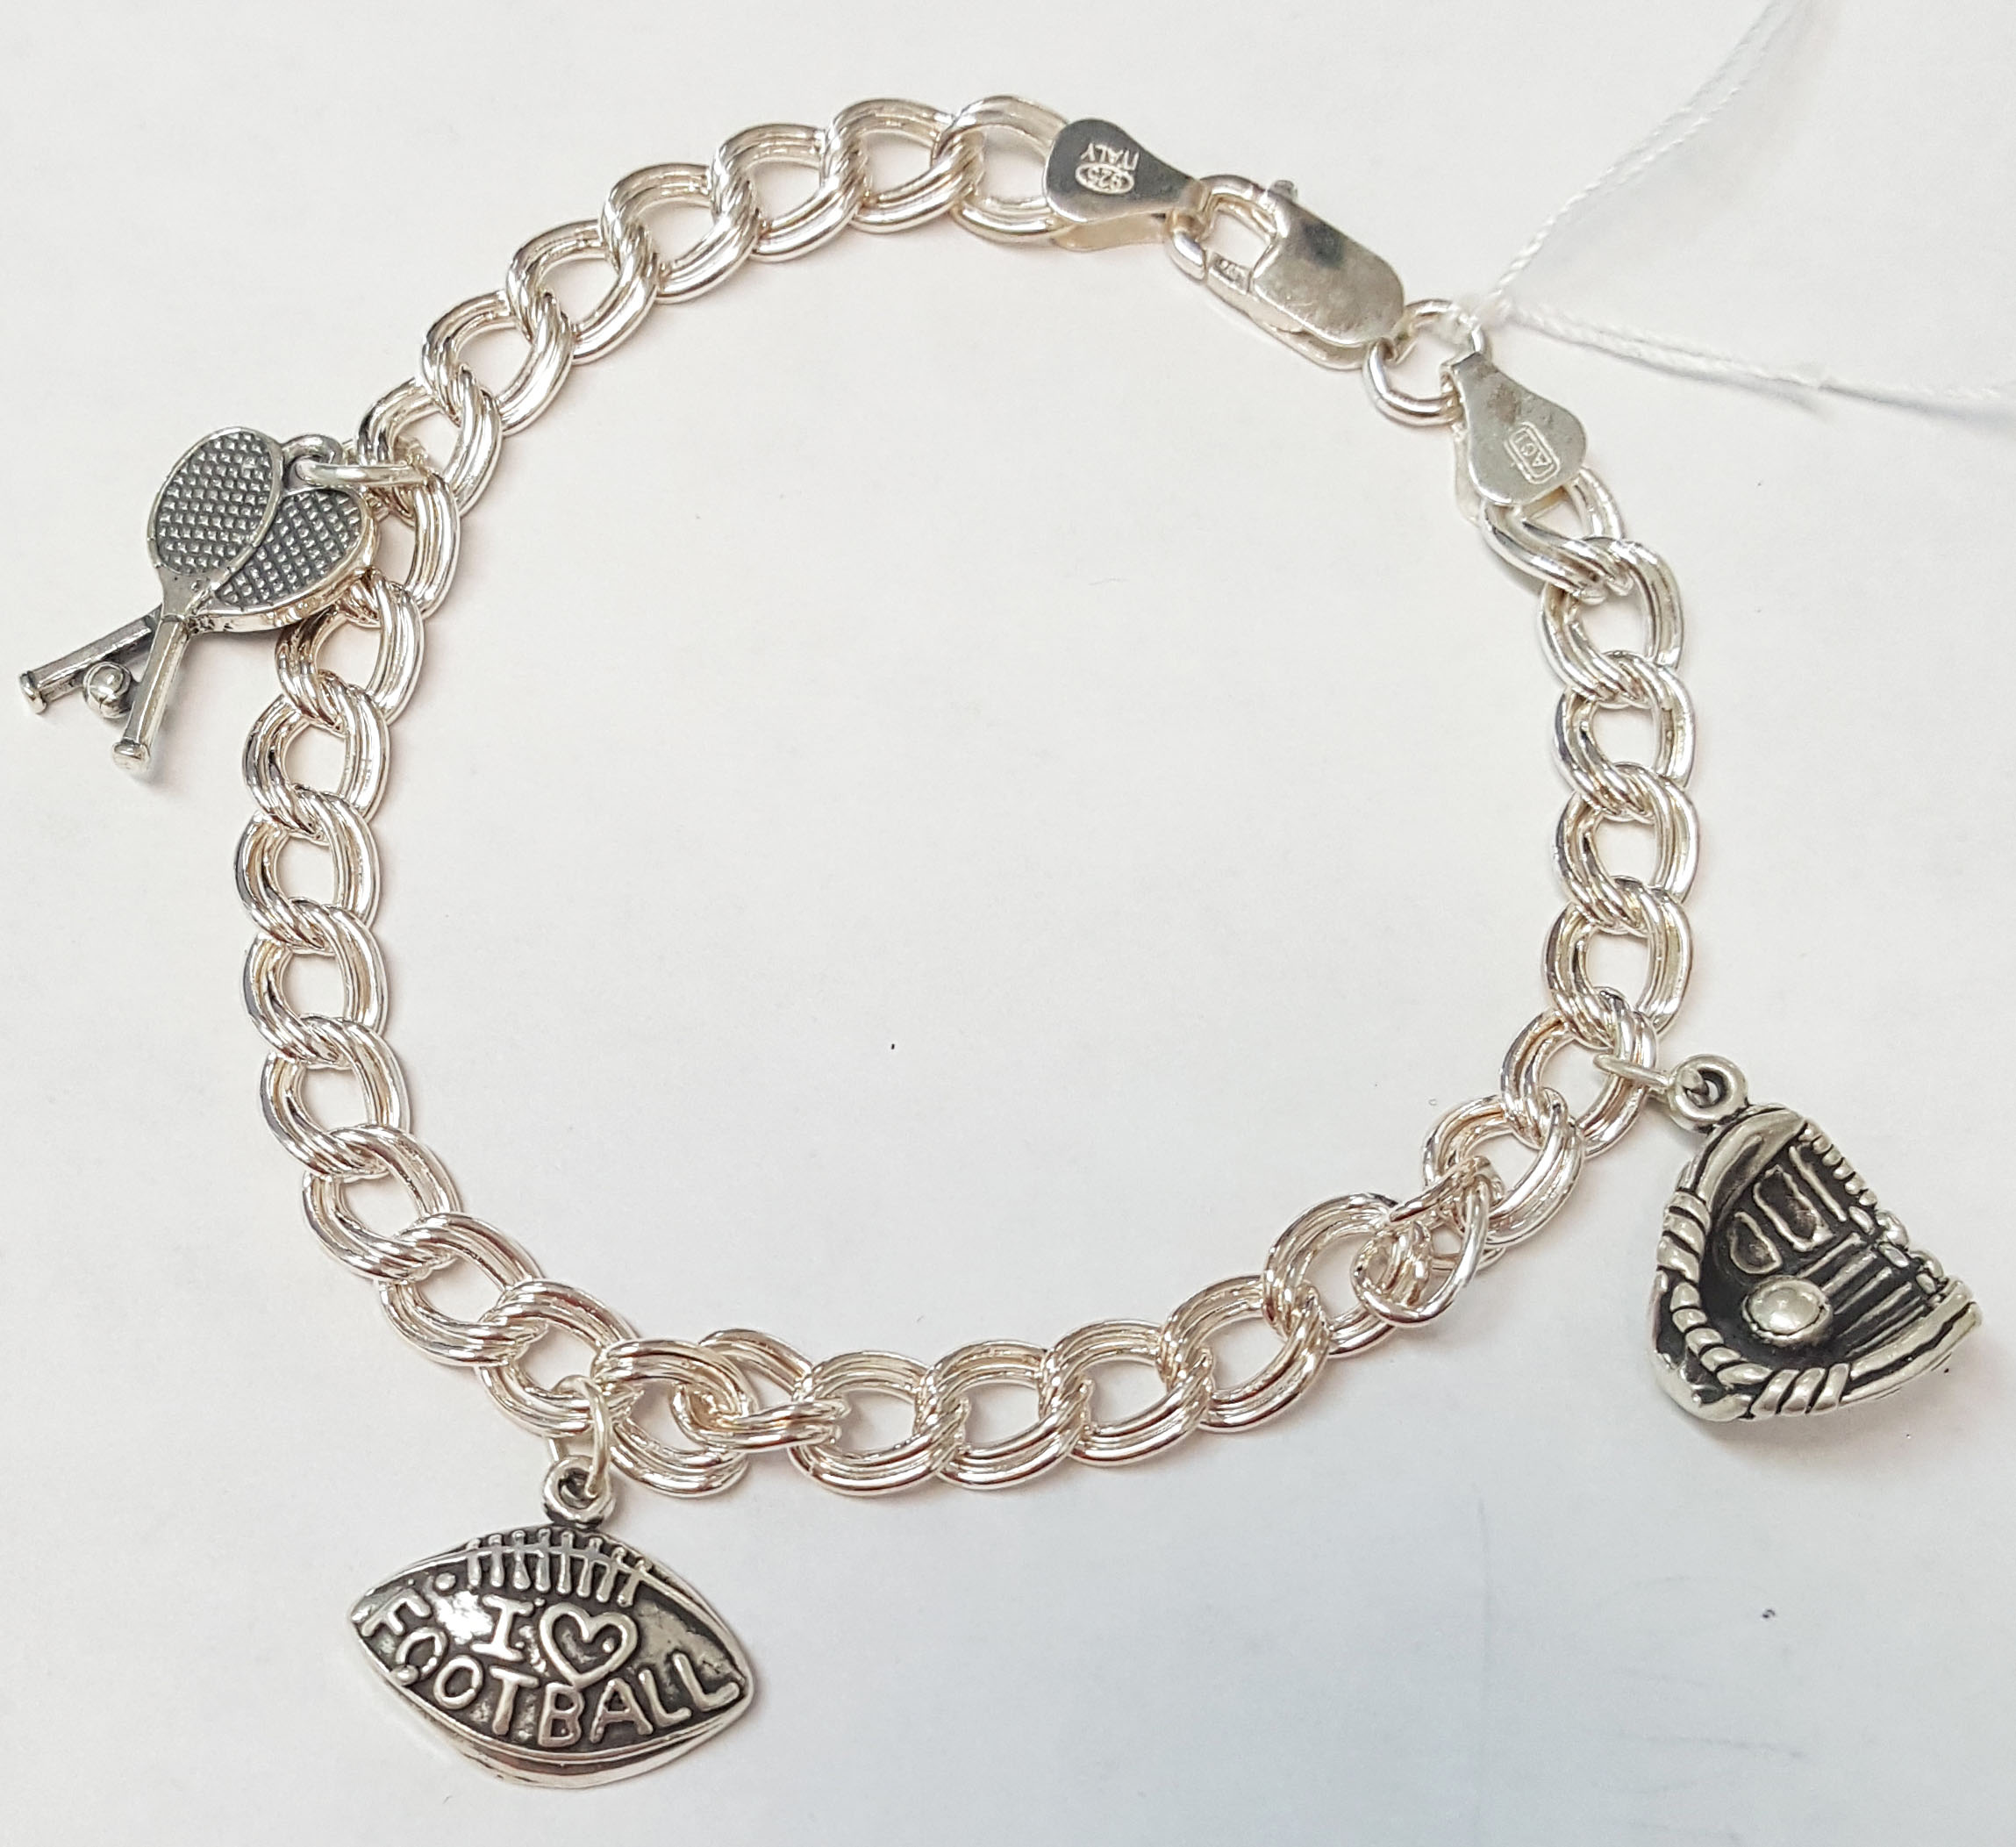 Double Link Charm Bracelet - Flintski Jewelry